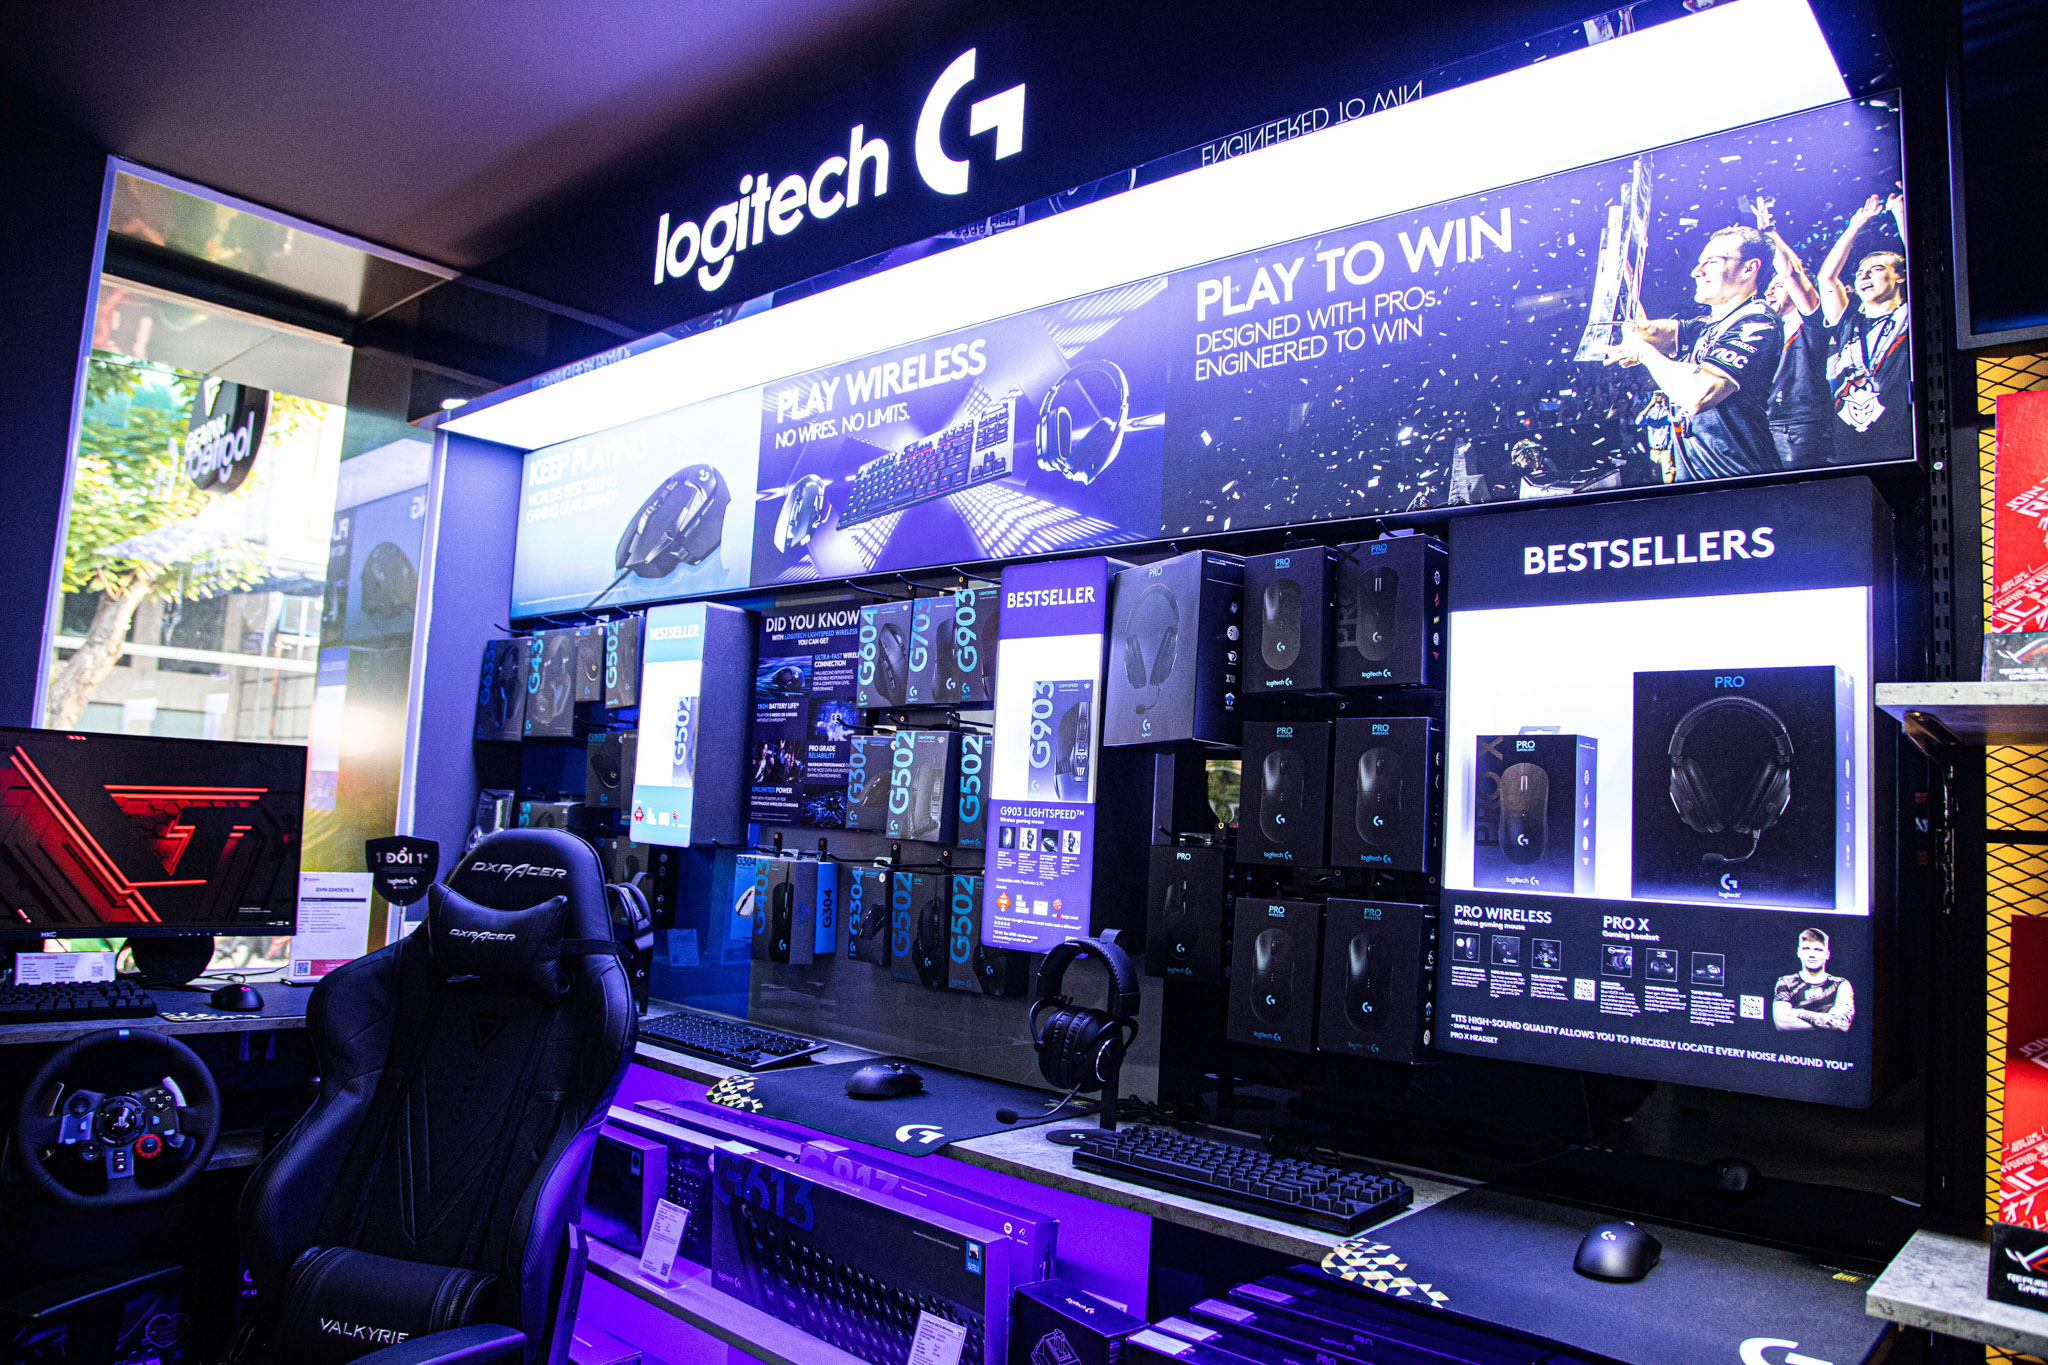 GearVN khai trương showroom Hi-end PC và gaming gear ngay tại trung tâm thành phố Hồ Chí Minh